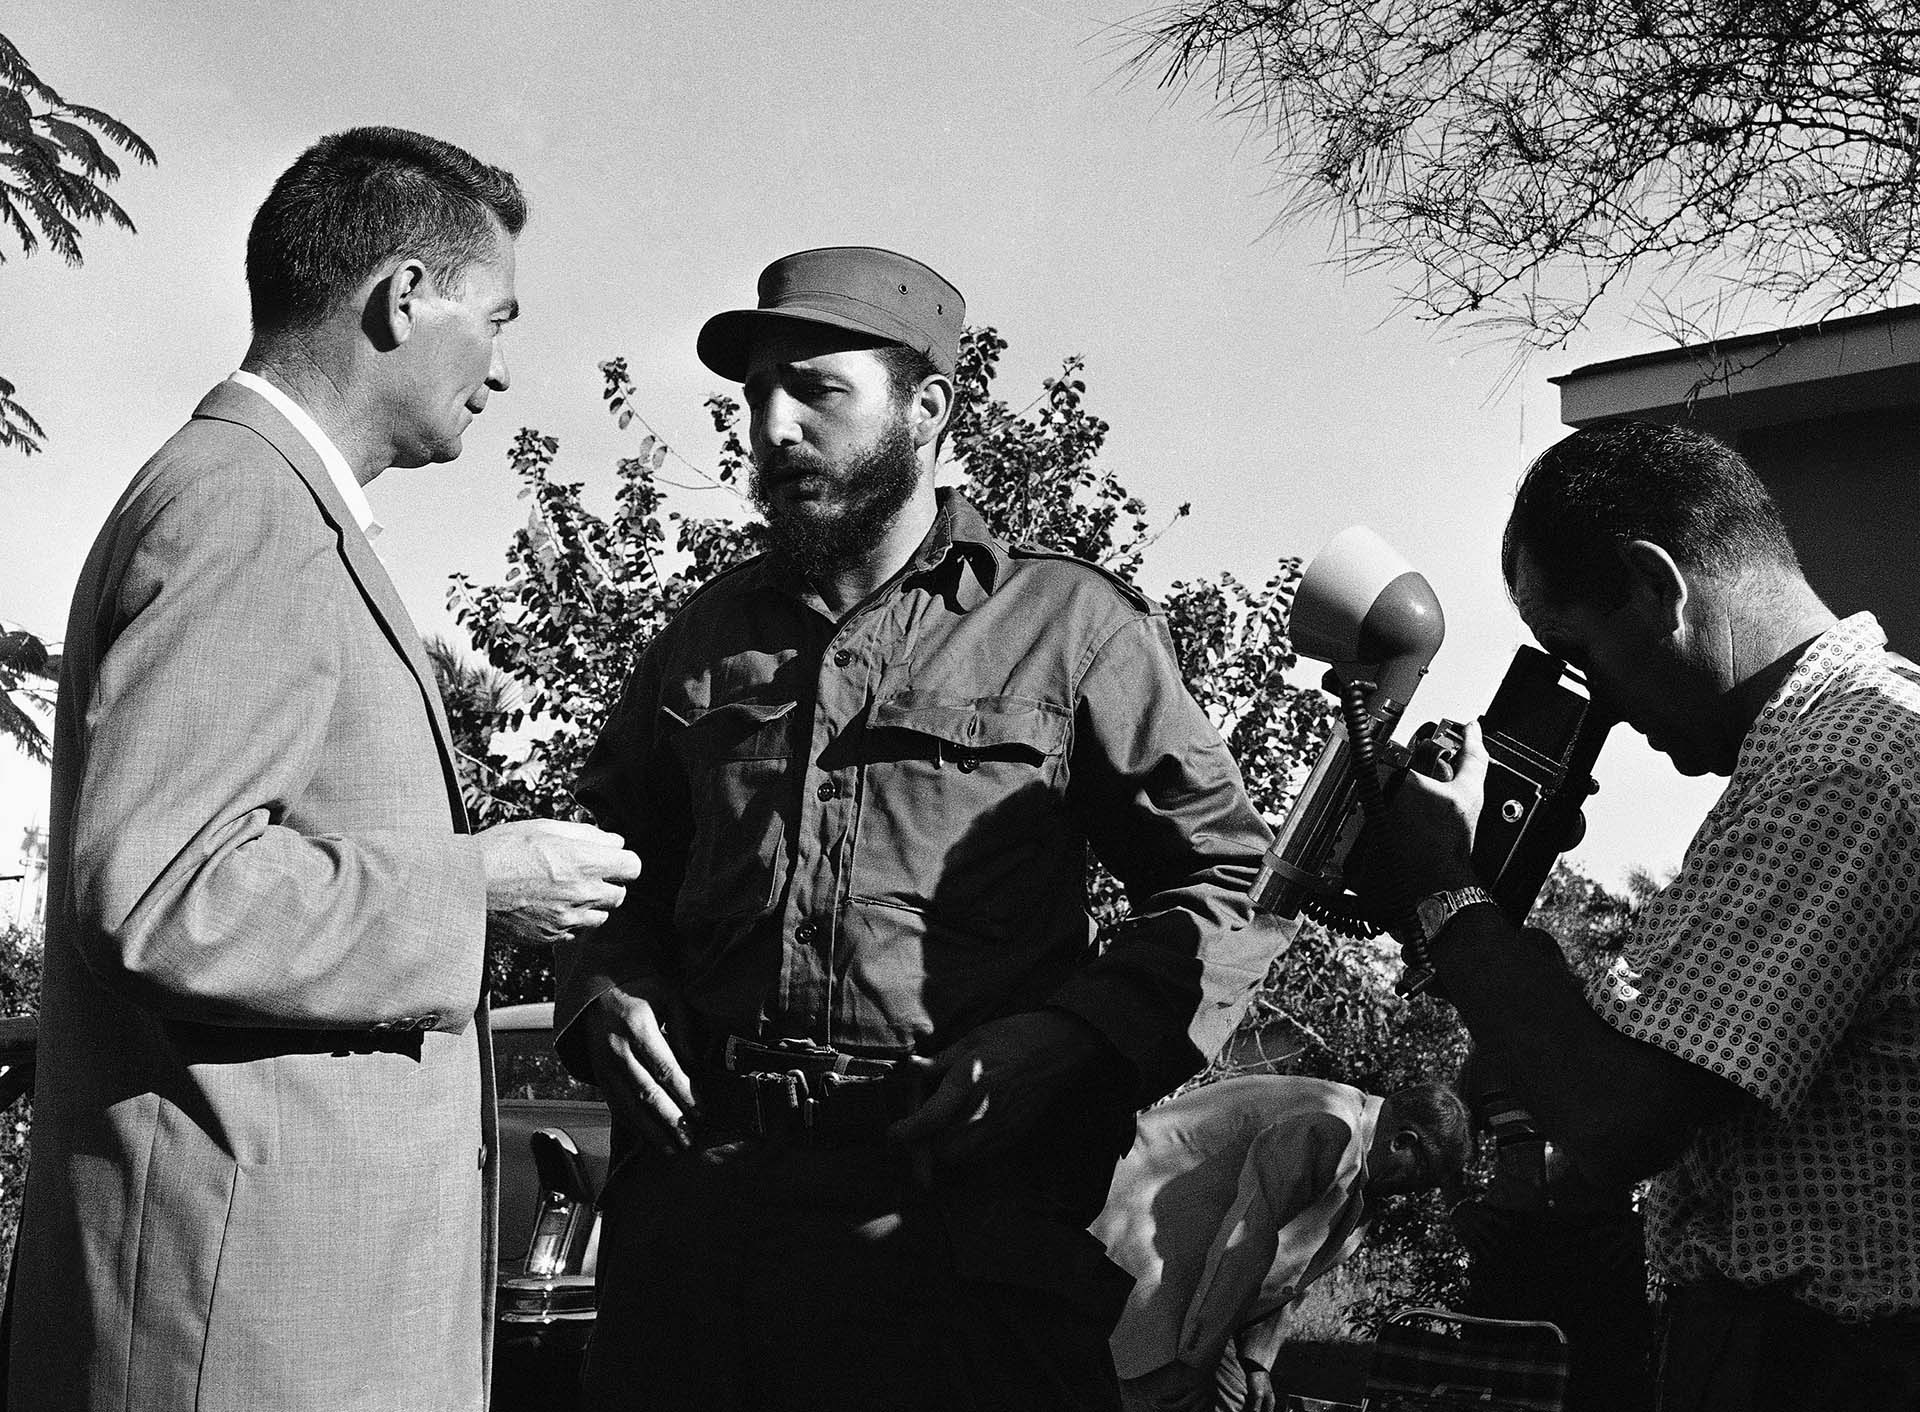 Una de las primeras entrevistas de prensa internacional a Fidel tras el triunfo revolucionario